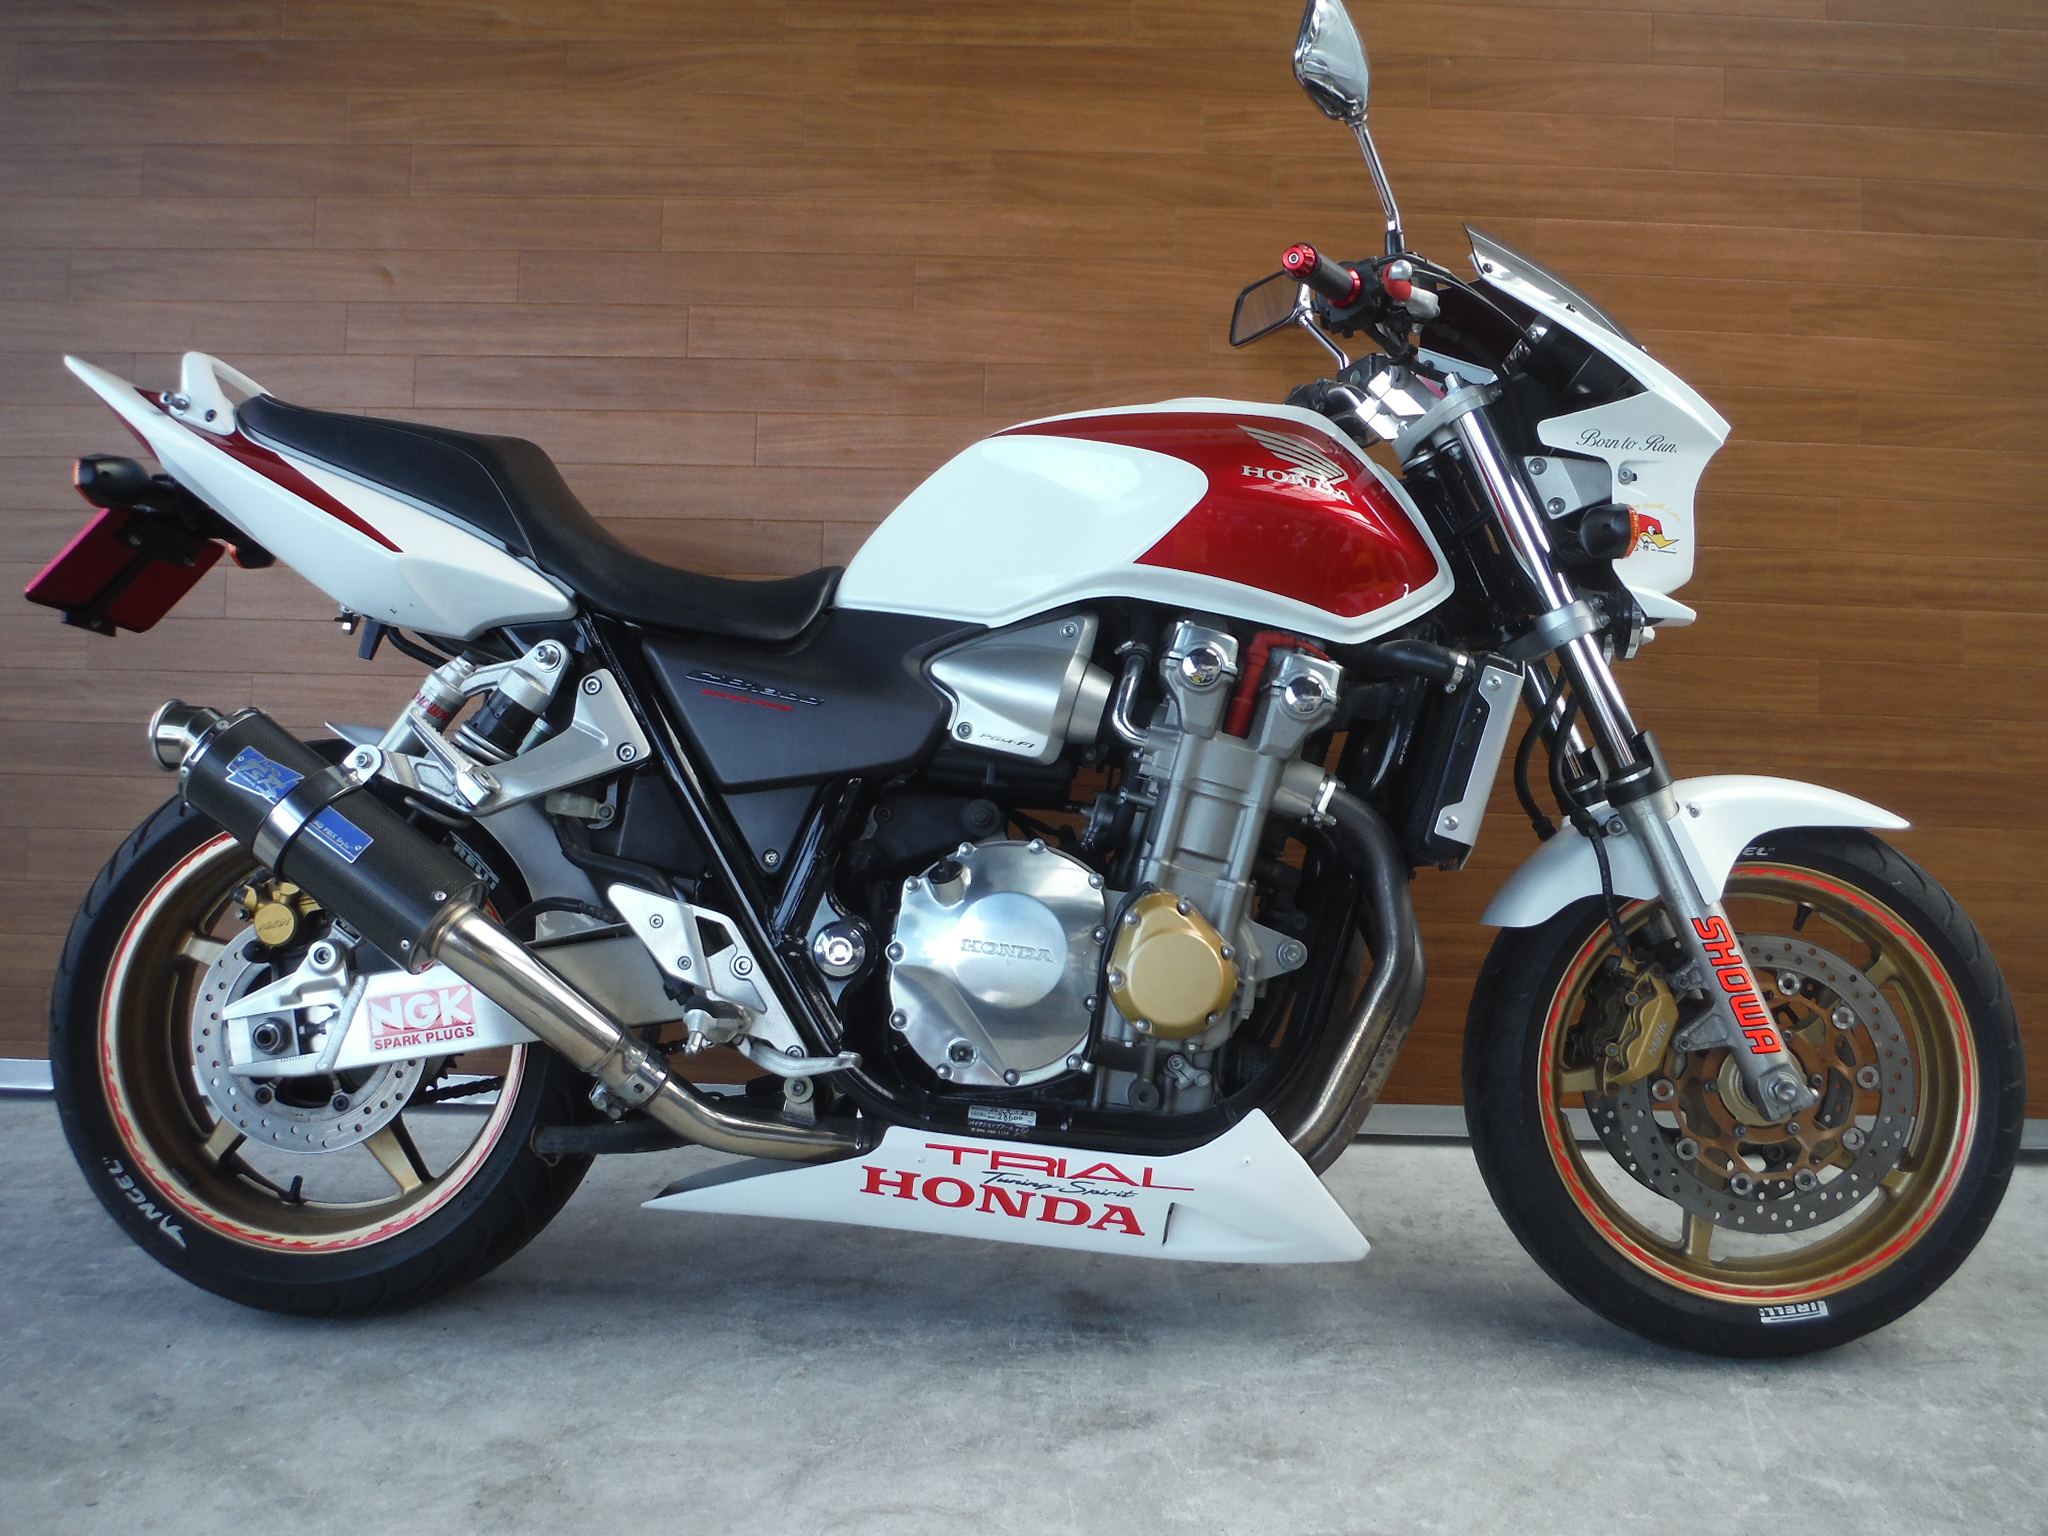 熊本中古車バイク情報 ホンダ Cb1300sf 1300 04年モデル 赤白 熊本のバイクショップ アール バイクの新車 中古車 販売や買取 レンタルバイクのことならおまかせください